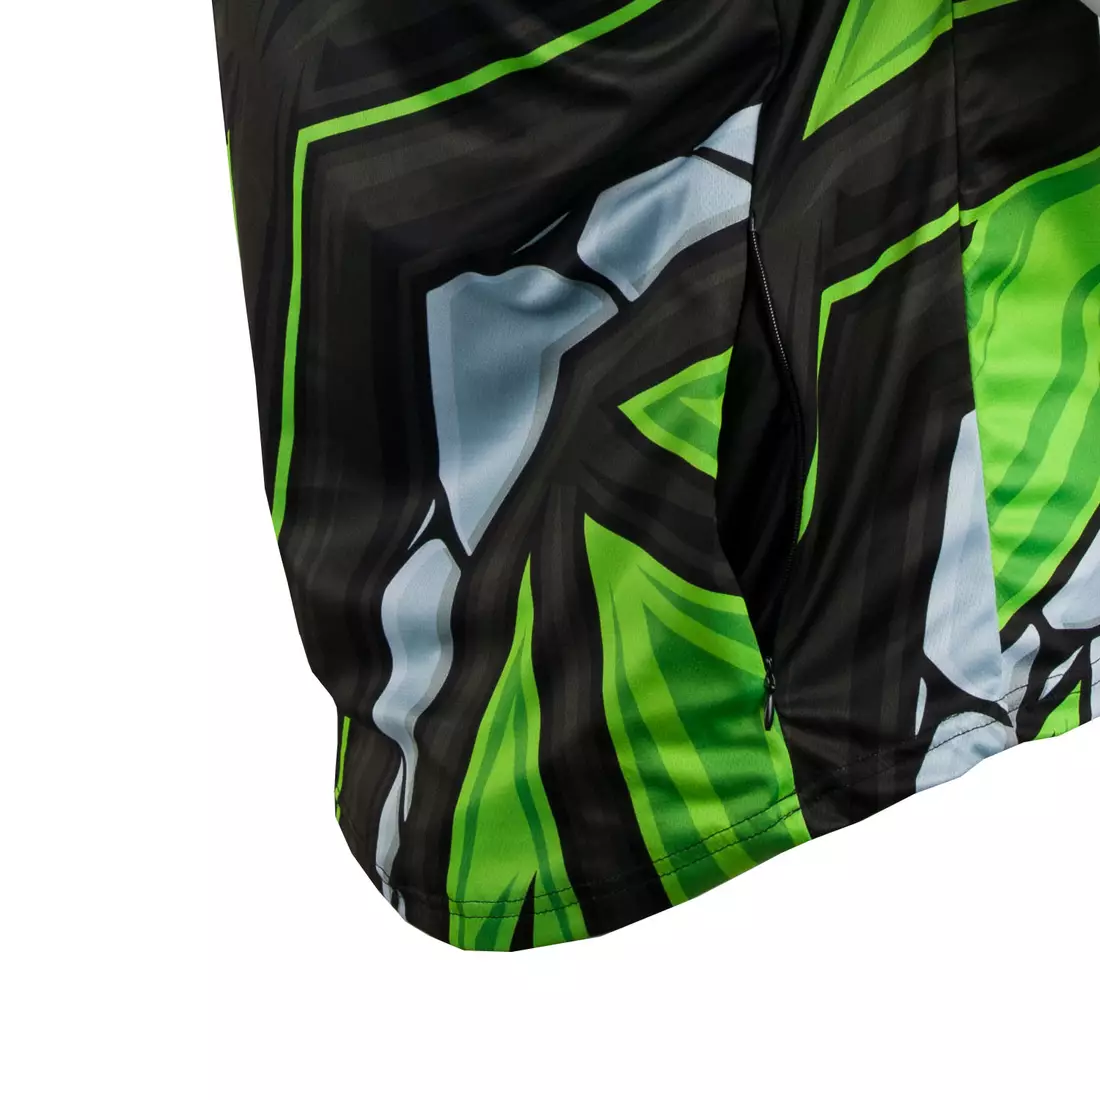 KAYMAQ DESIGN M42 tricou de ciclism MTB pentru bărbați, verde fluor